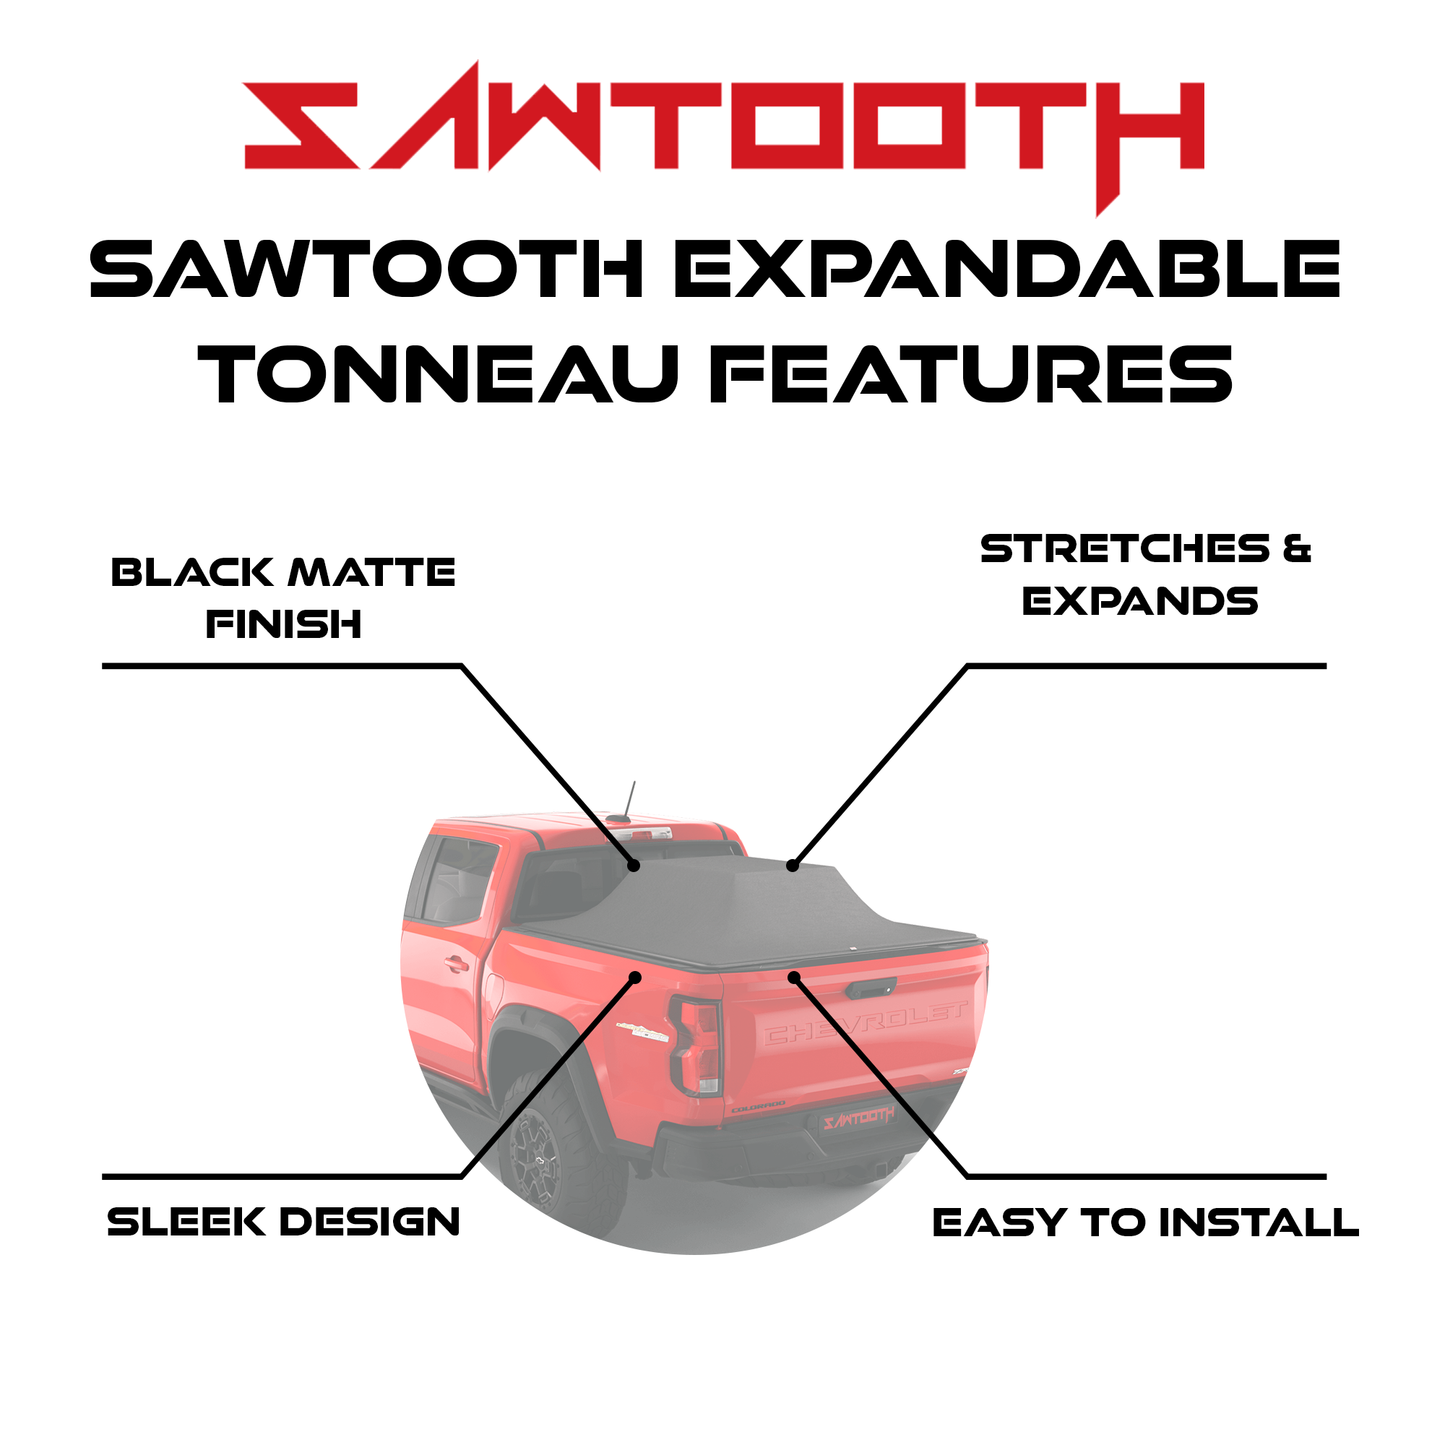 Sawtooth Expandable Tonneau Features 